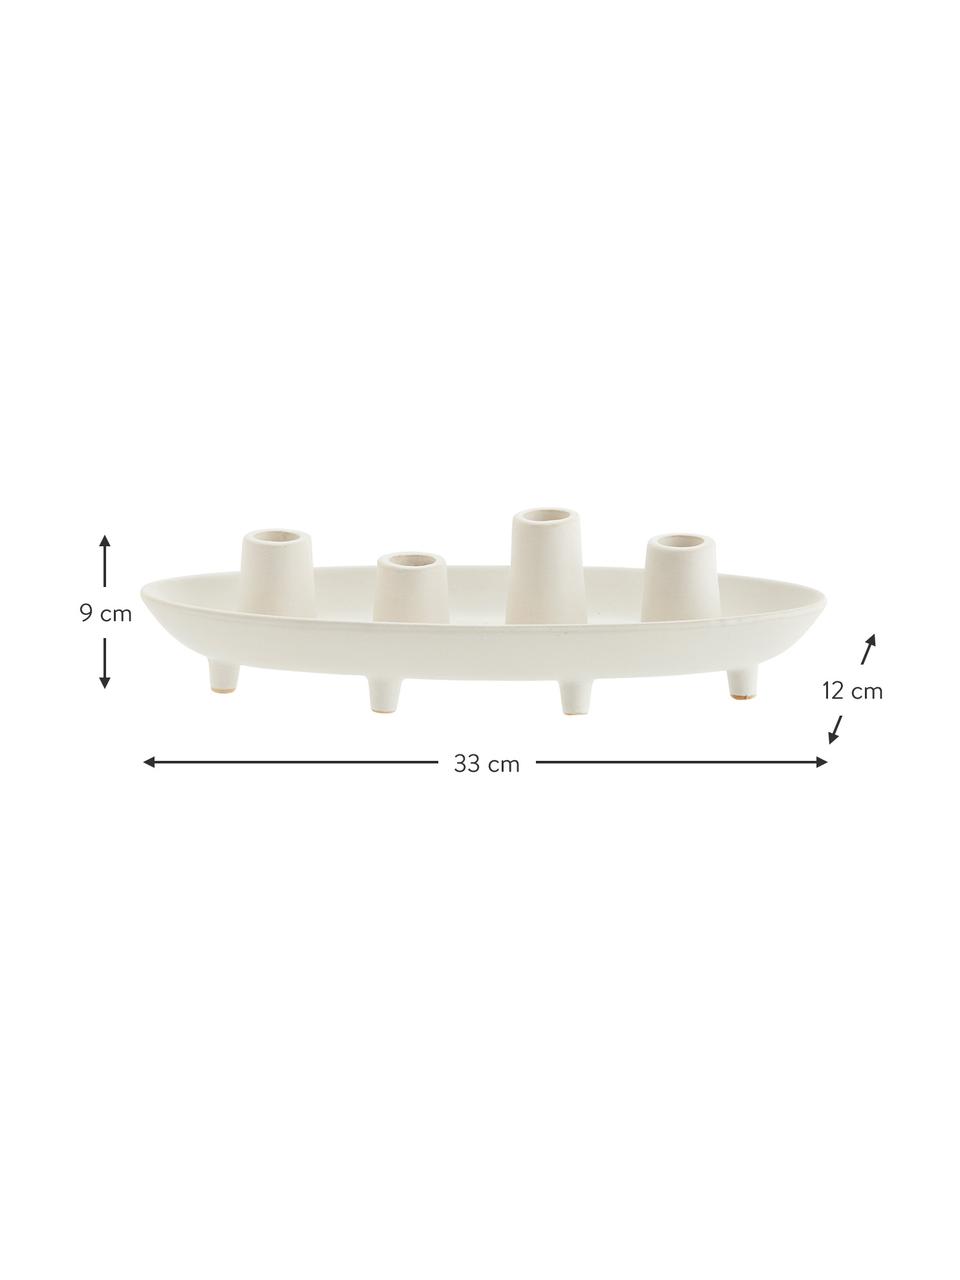 Candelabro de gres Boat, Gres, Blanco crema, An 33 x Al 9 cm